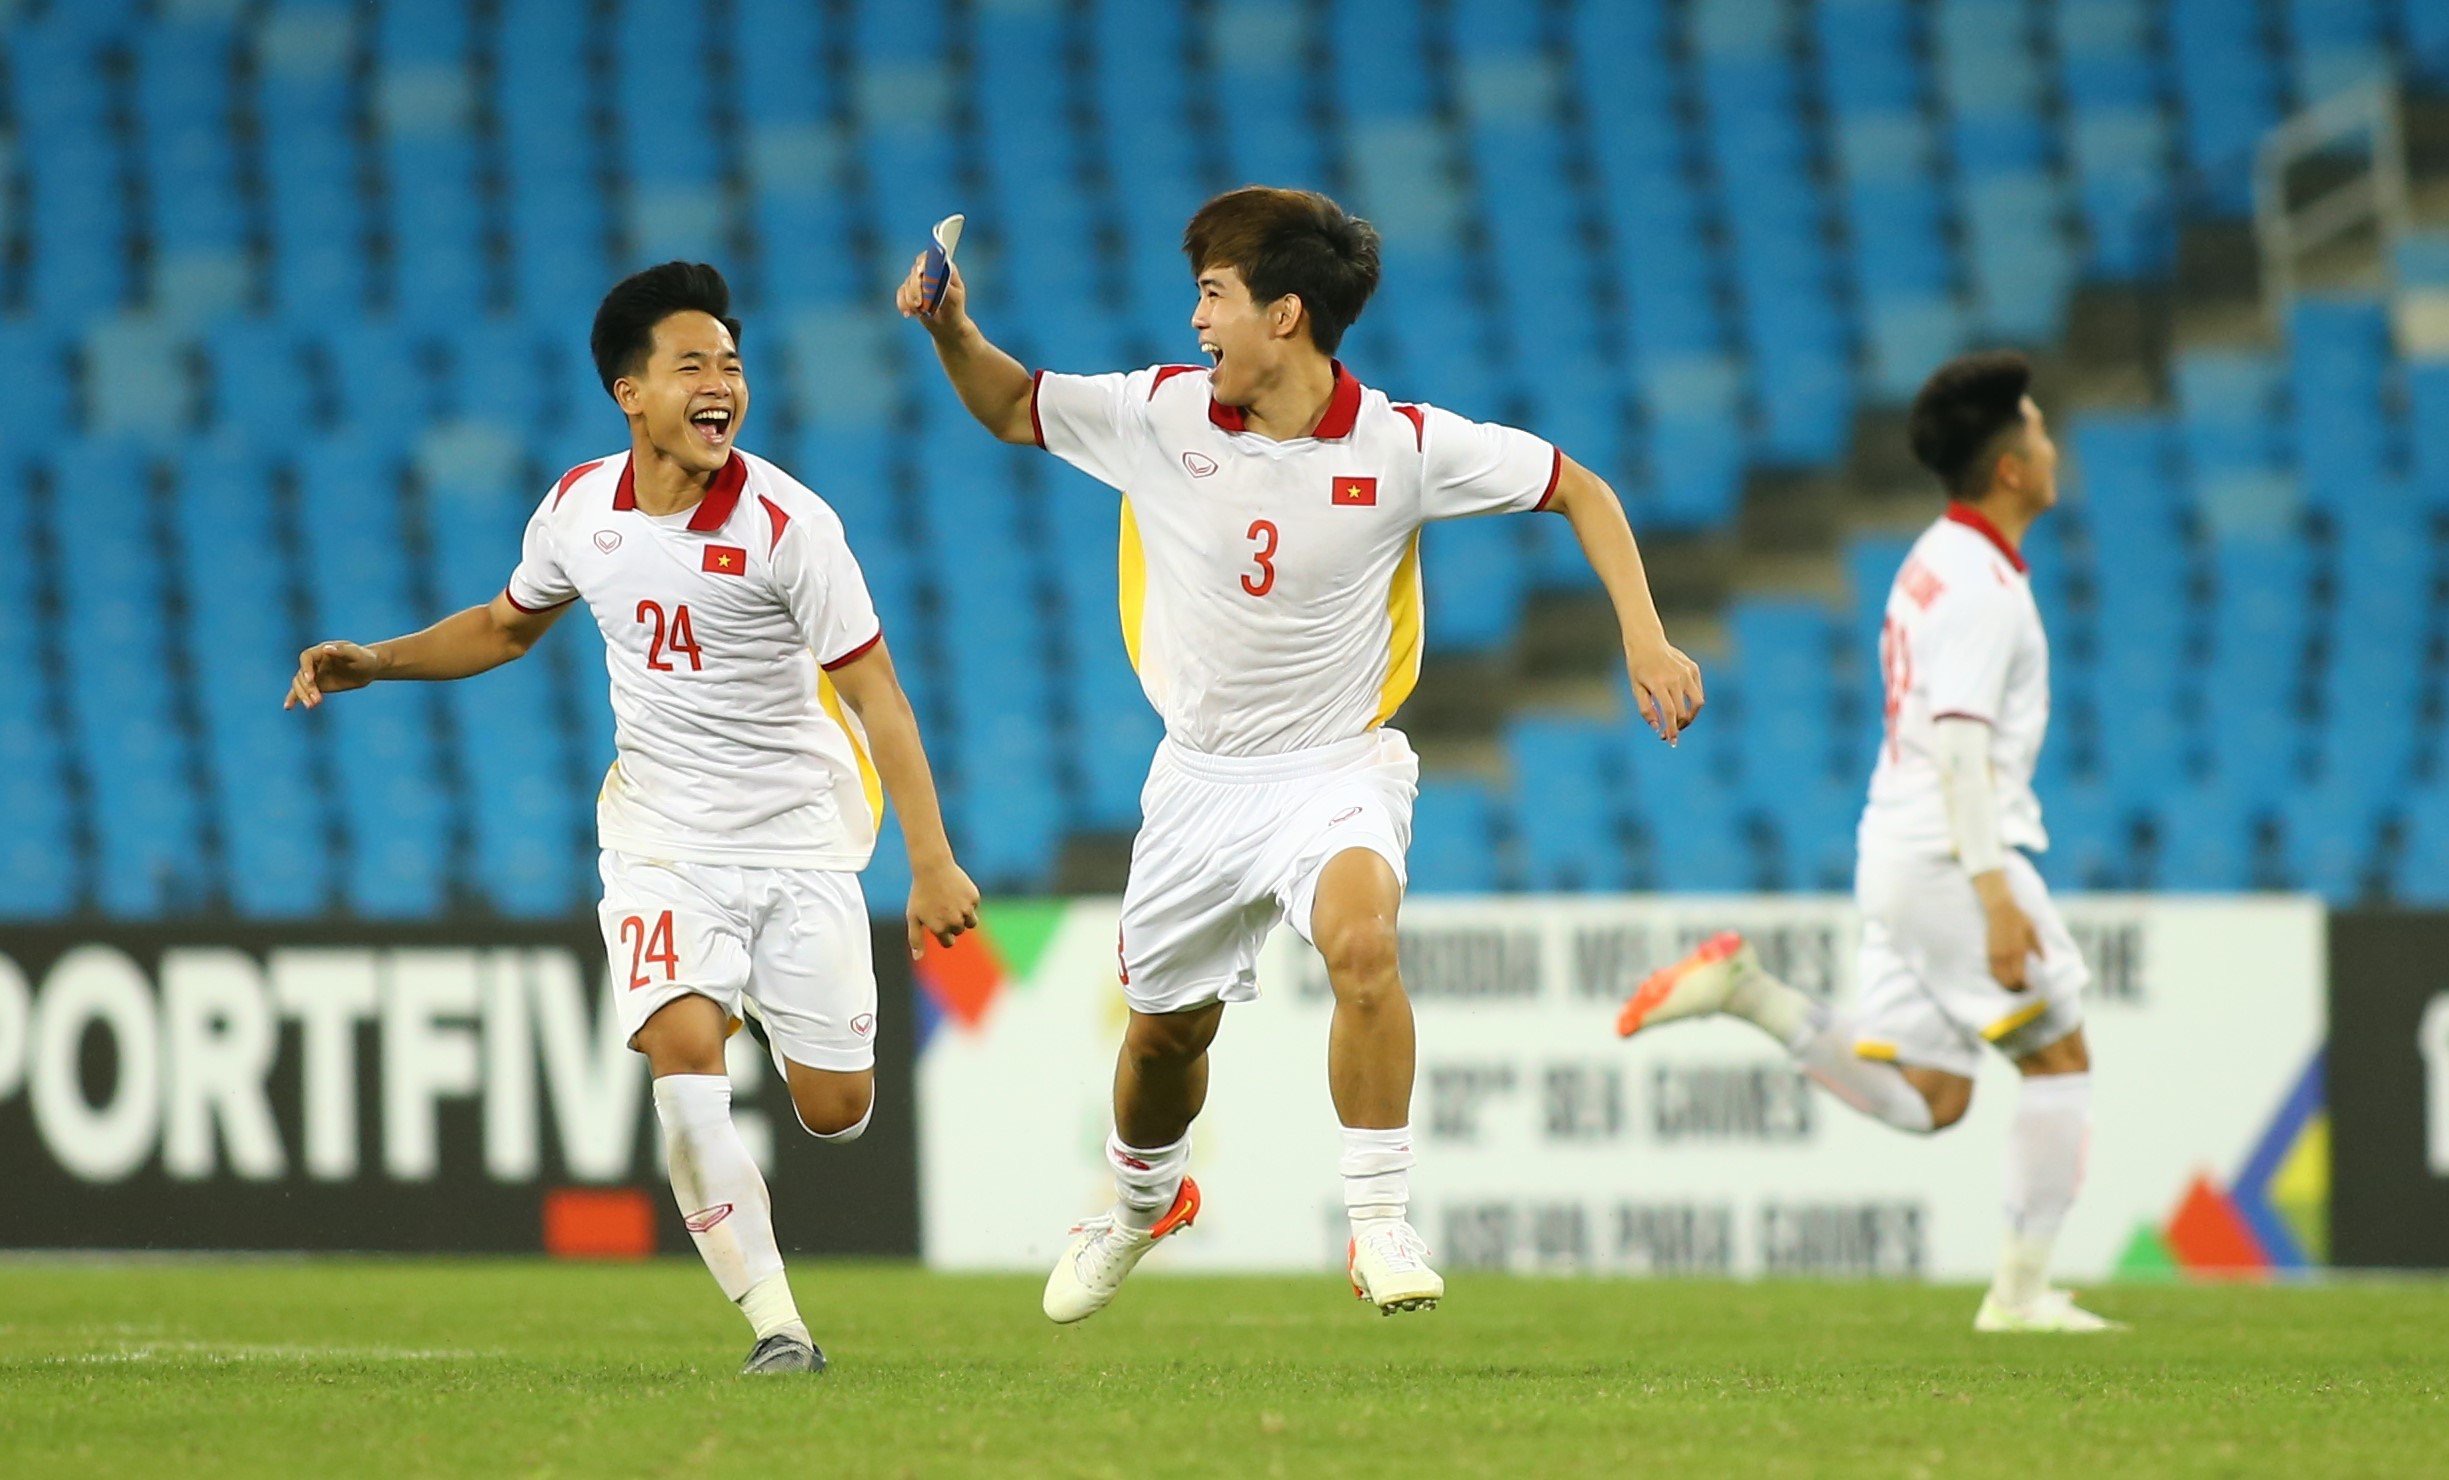 Chức vô địch U.23 Đông Nam Á: Chức vô địch U.23 Đông Nam Á là một trong những thành tích đáng tự hào của đội tuyển U23 Việt Nam. Cùng xem lại những khoảnh khắc đáng nhớ của đội U23 trong hành trình đến chức vô địch và những khoảnh khắc ăn mừng đầy cảm xúc của cầu thủ.